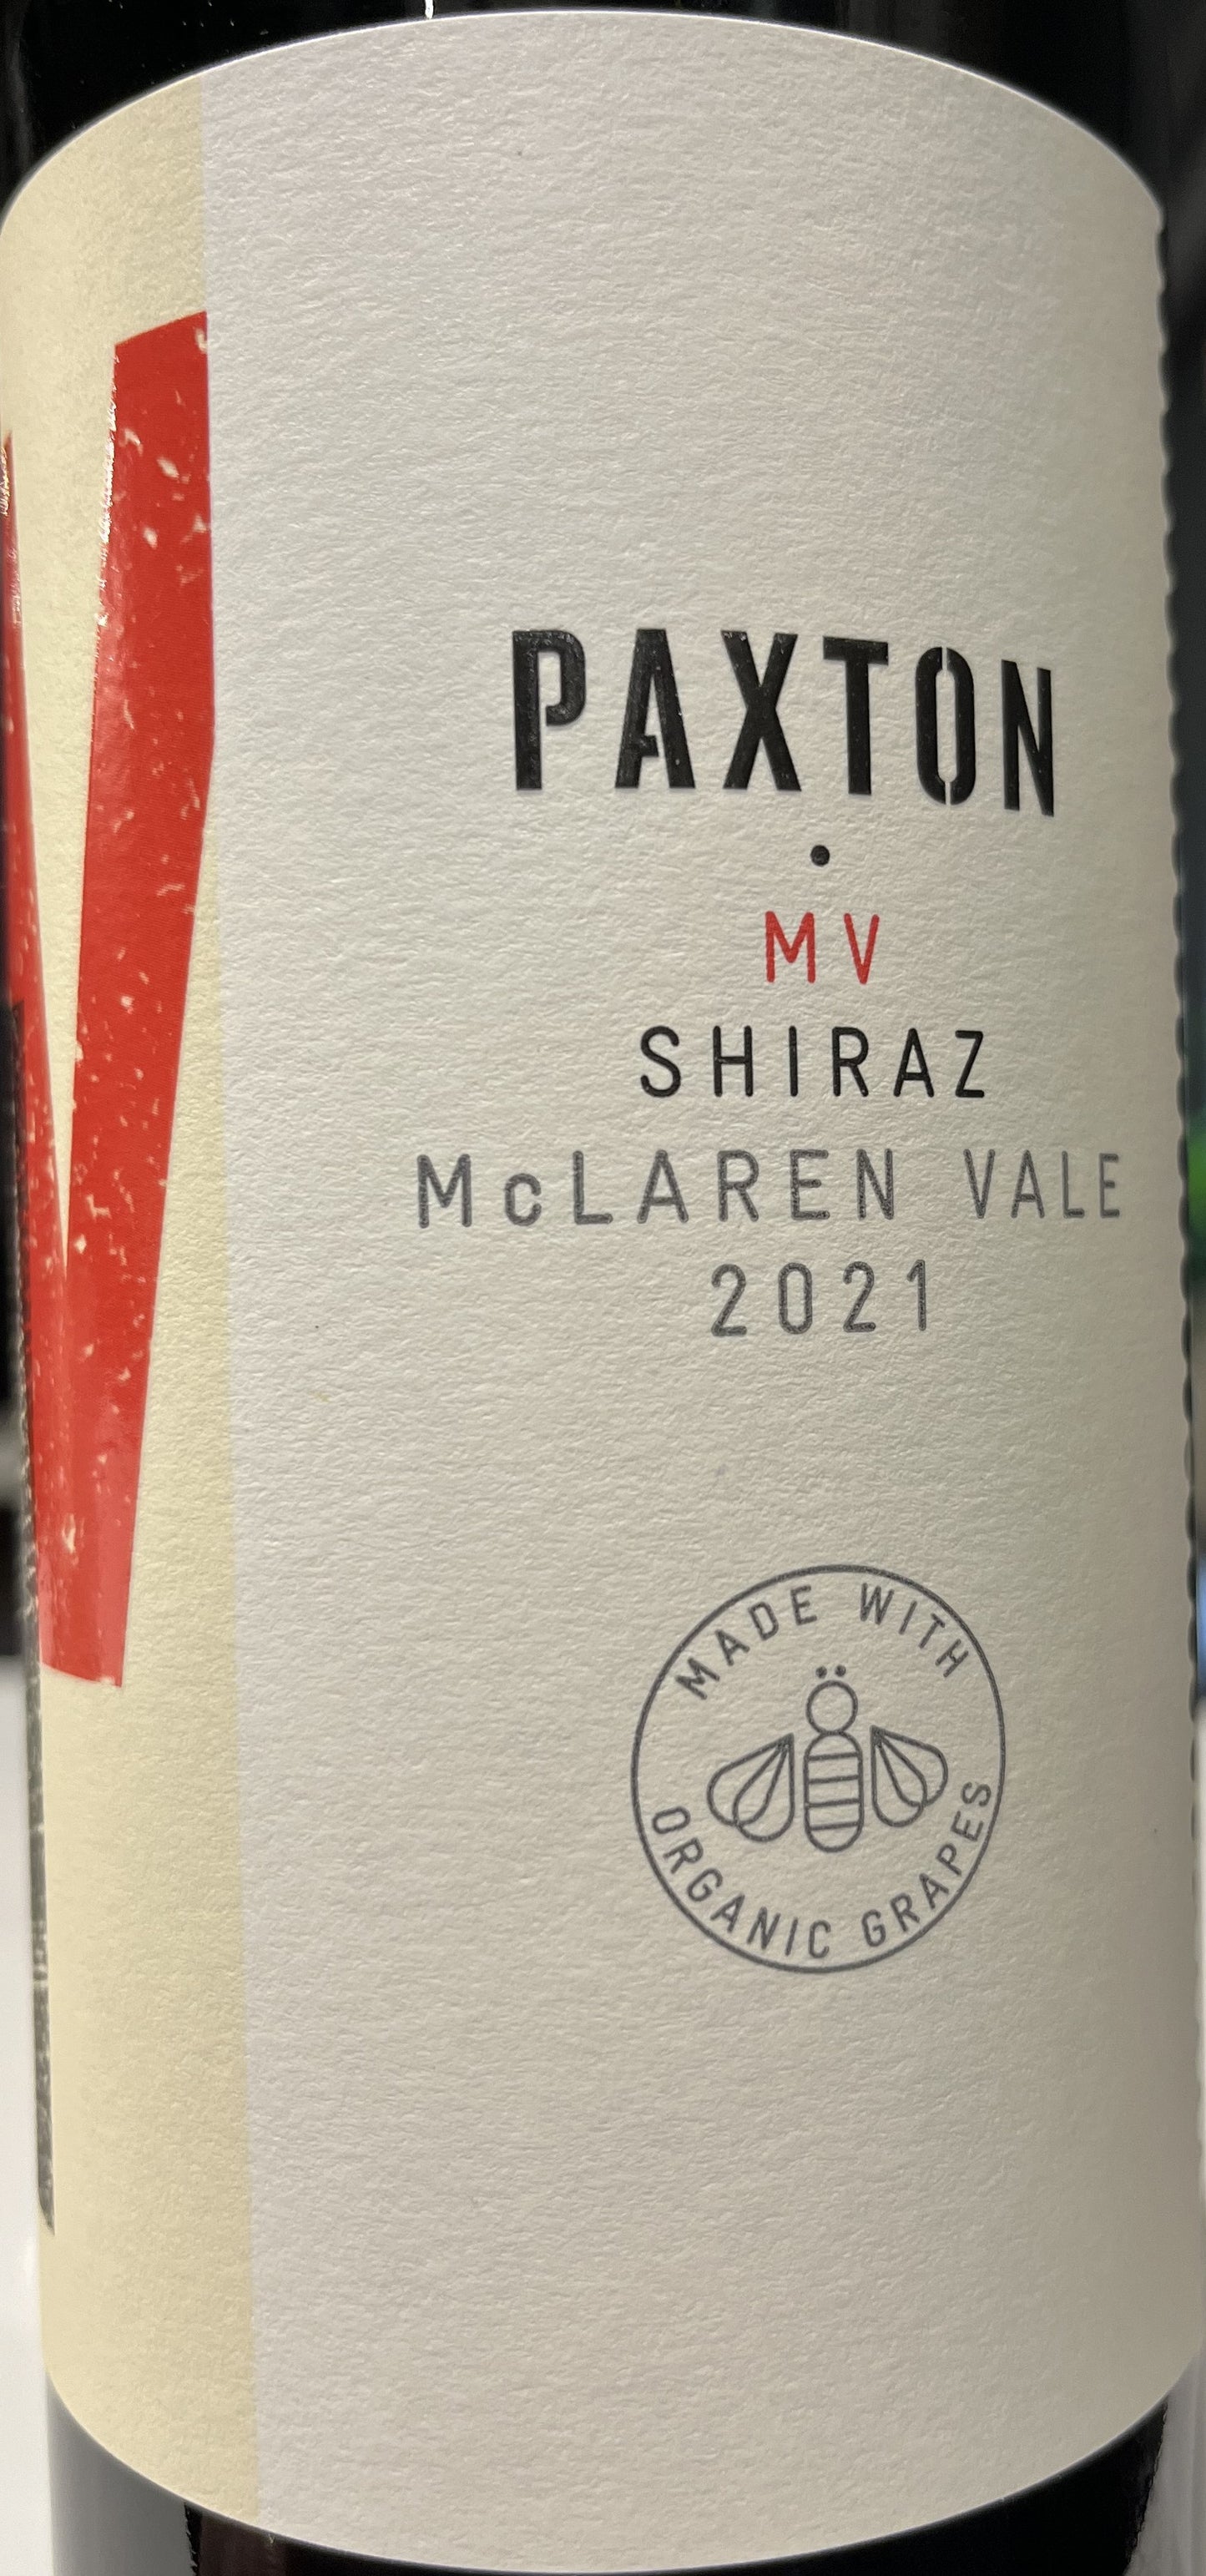 Paxton 'MV' - Shiraz